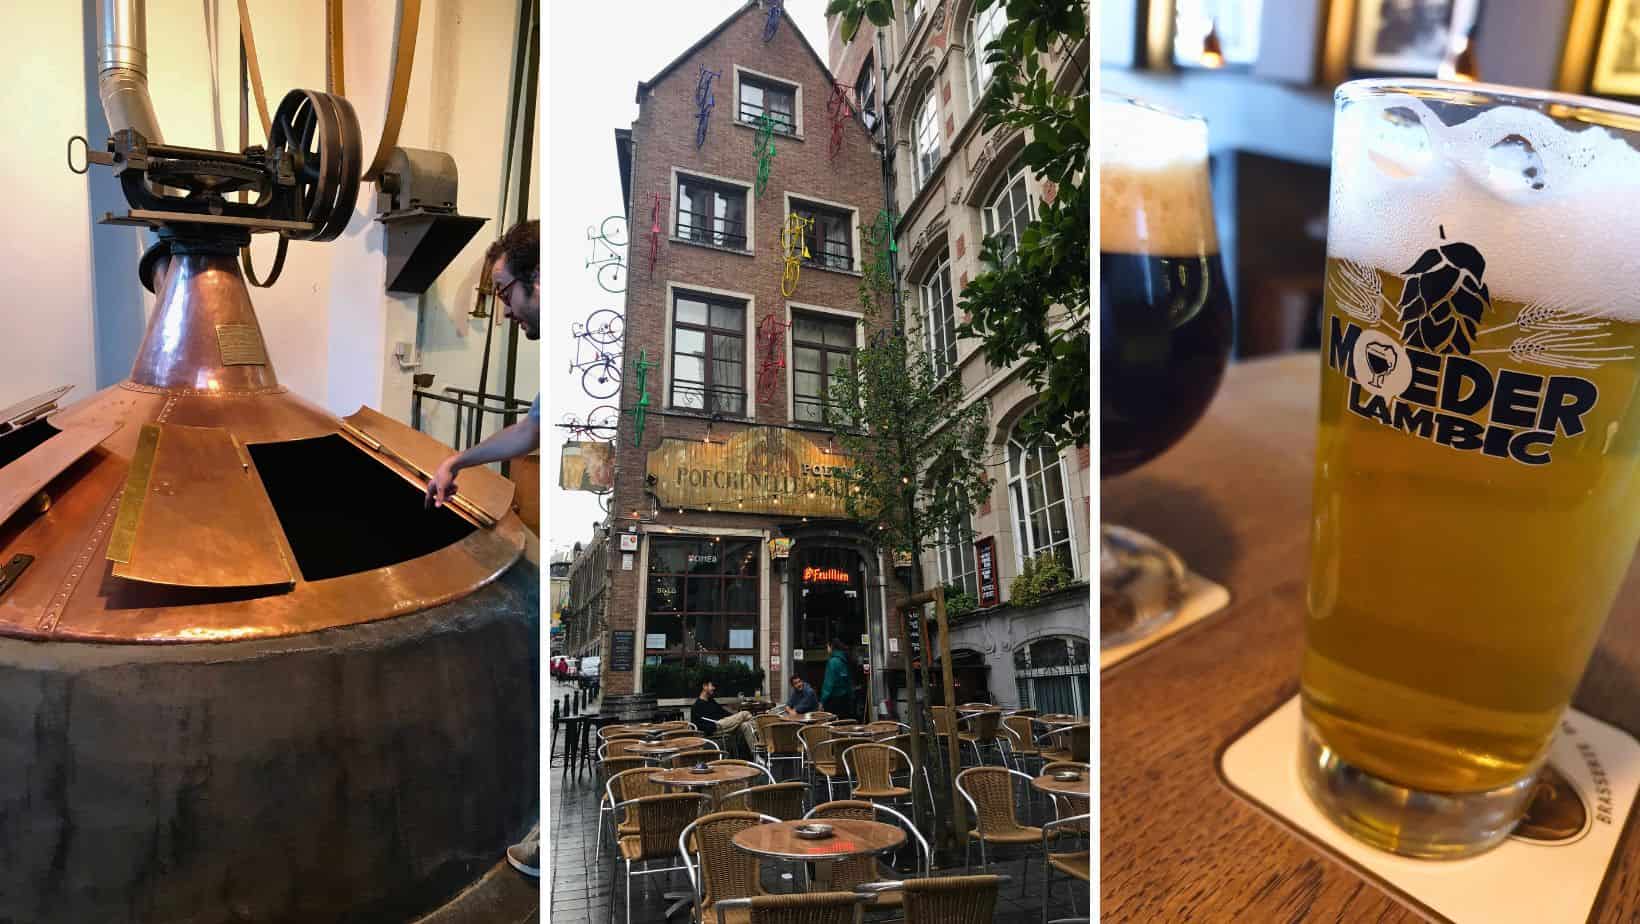 Bier in Brussel - waar moet je naartoe 10 tips!